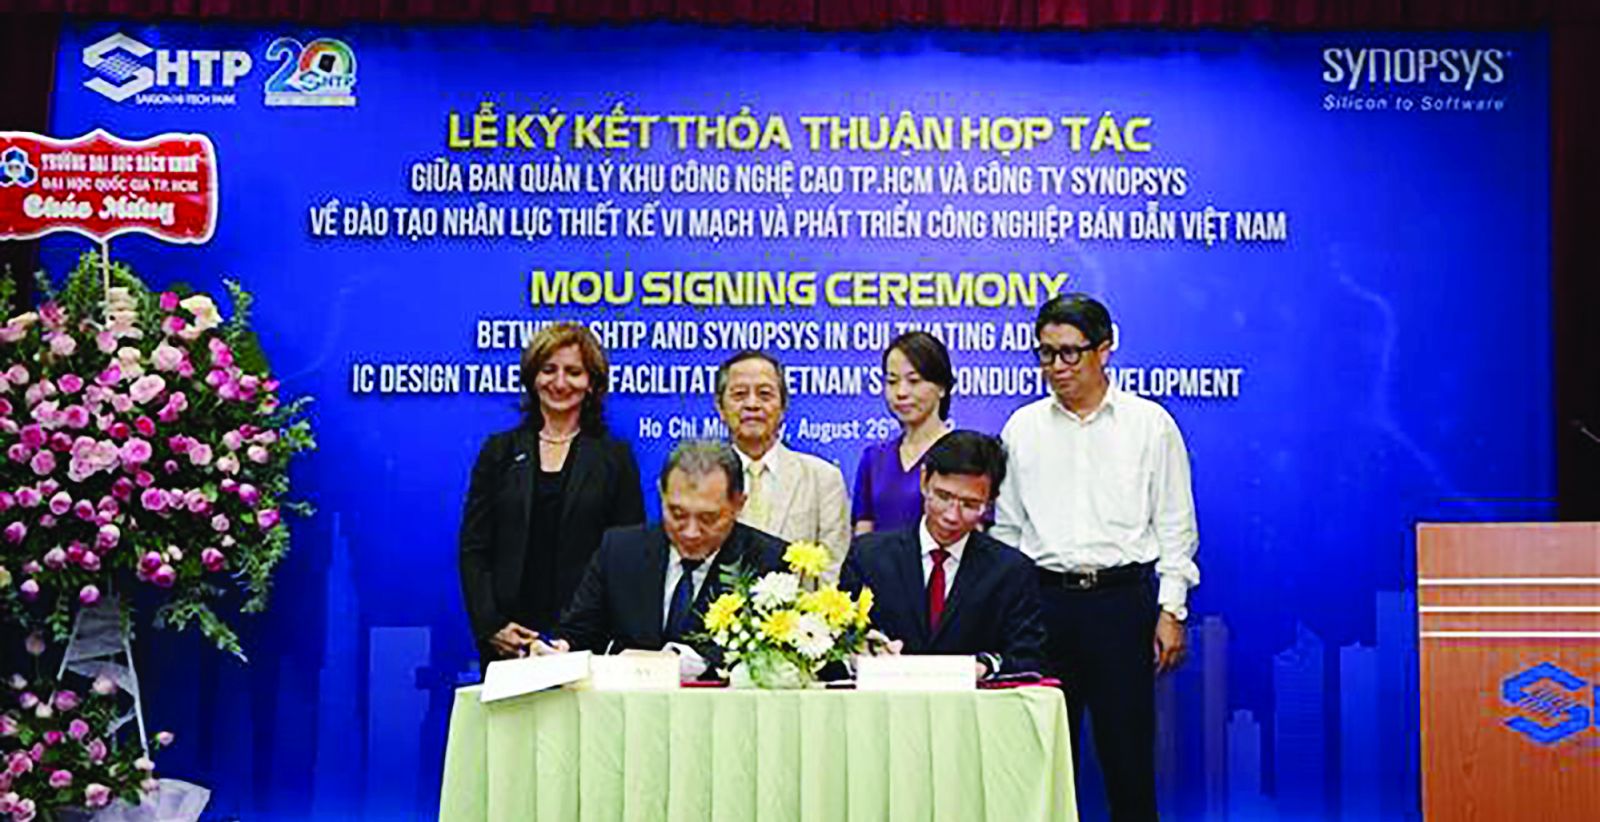  Tiến sĩ Robert Li (trái), Phó Giám đốc Kinh doanh của Synopsys khu vực Đài Loan và Nam Á, ký Biên bản ghi nhớ (MoU) vào ngày 26 tháng 8 với Tiến sĩ Nguyễn Anh Thi (phải), Chủ tịch SHTP tại Việt Nam.